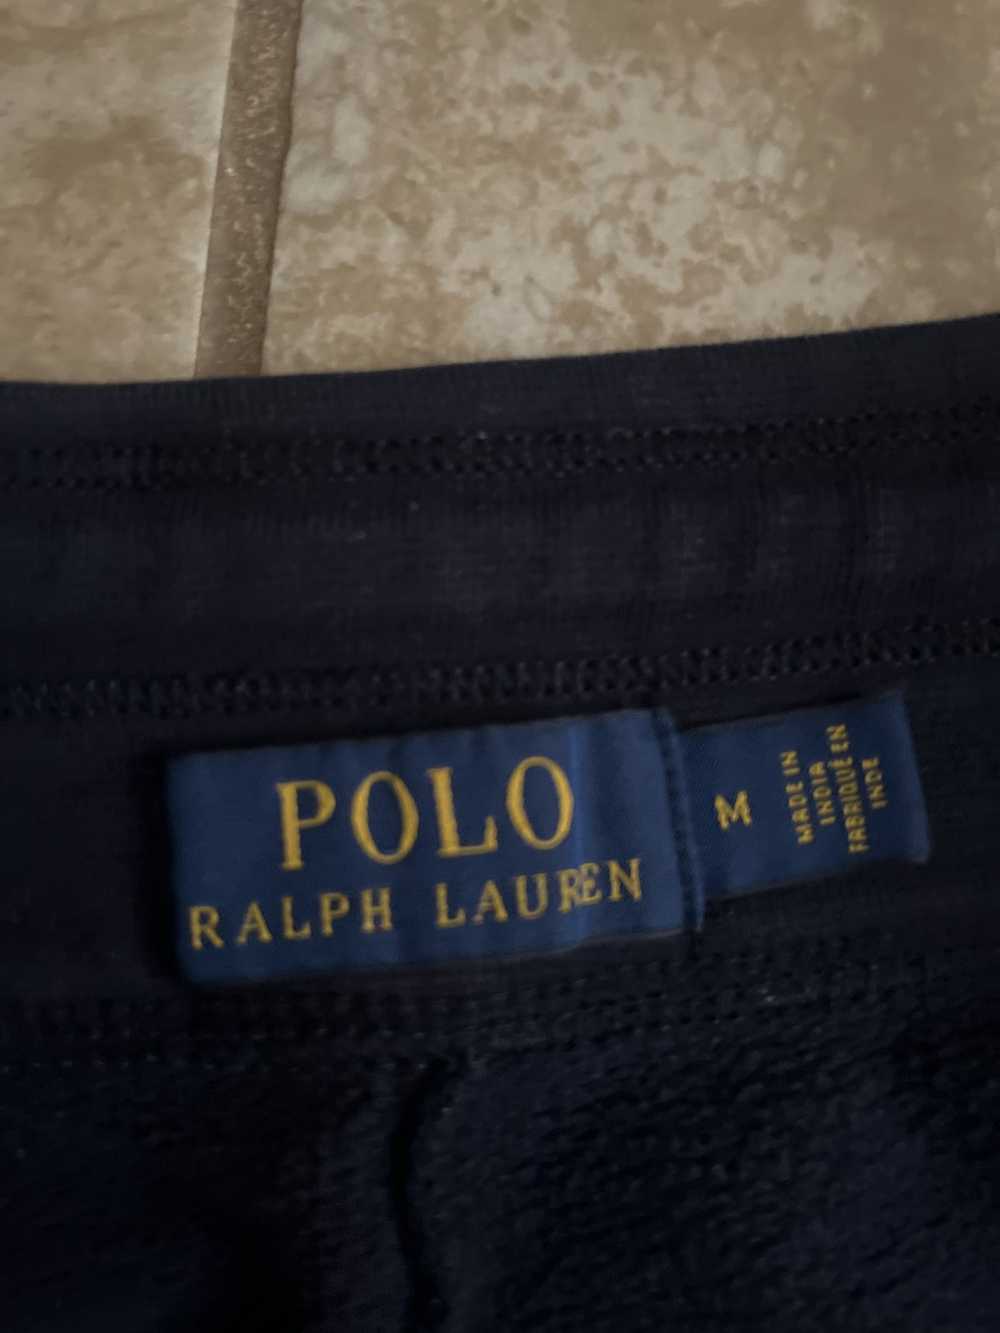 Polo Ralph Lauren Ralph Lauren Sweatpants - image 3